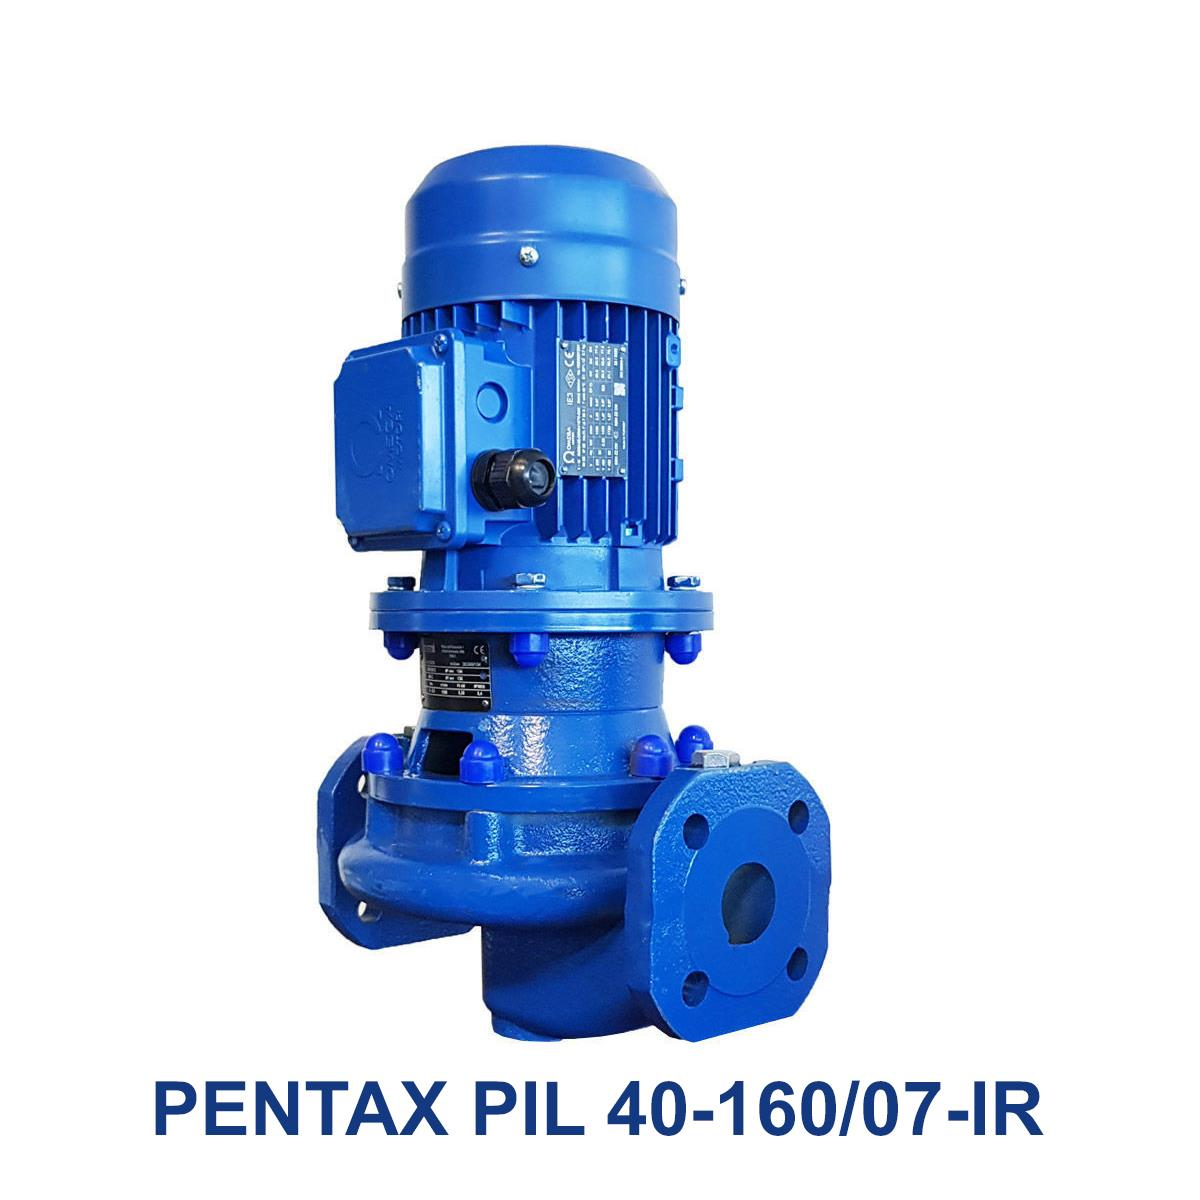 PENTAX-PIL-40-160-07-IR